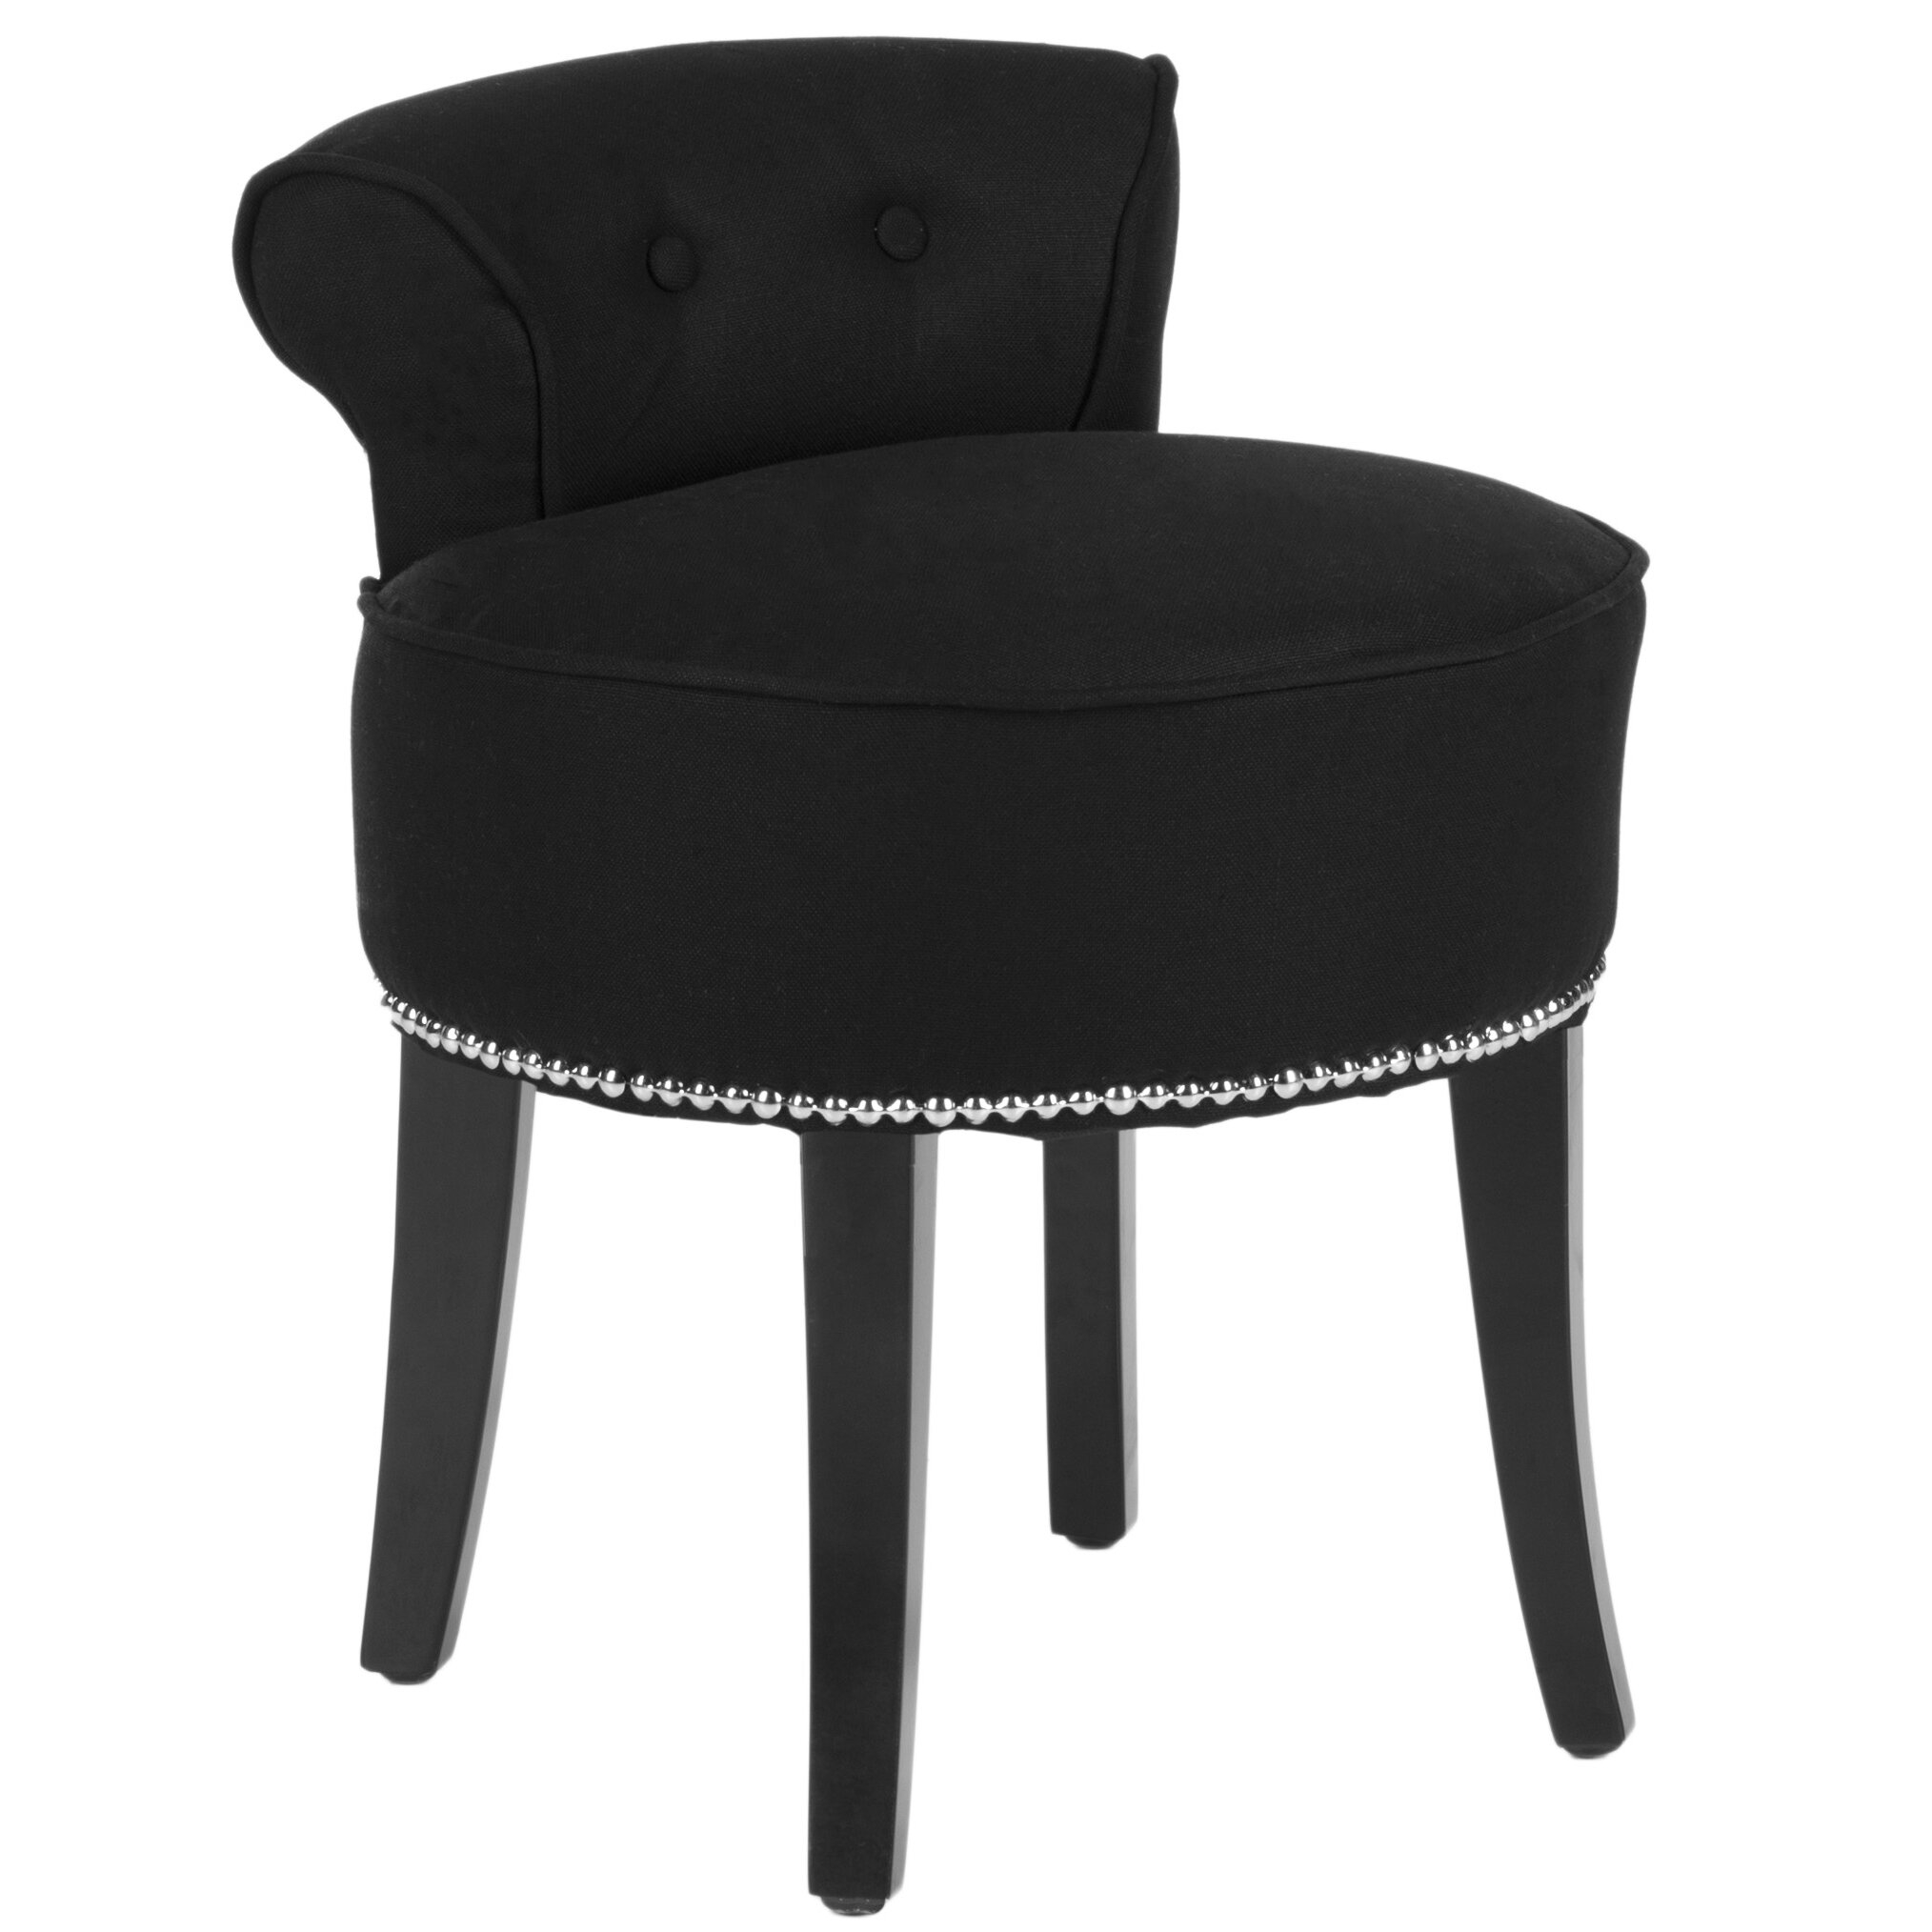 Georgia black vanity stool